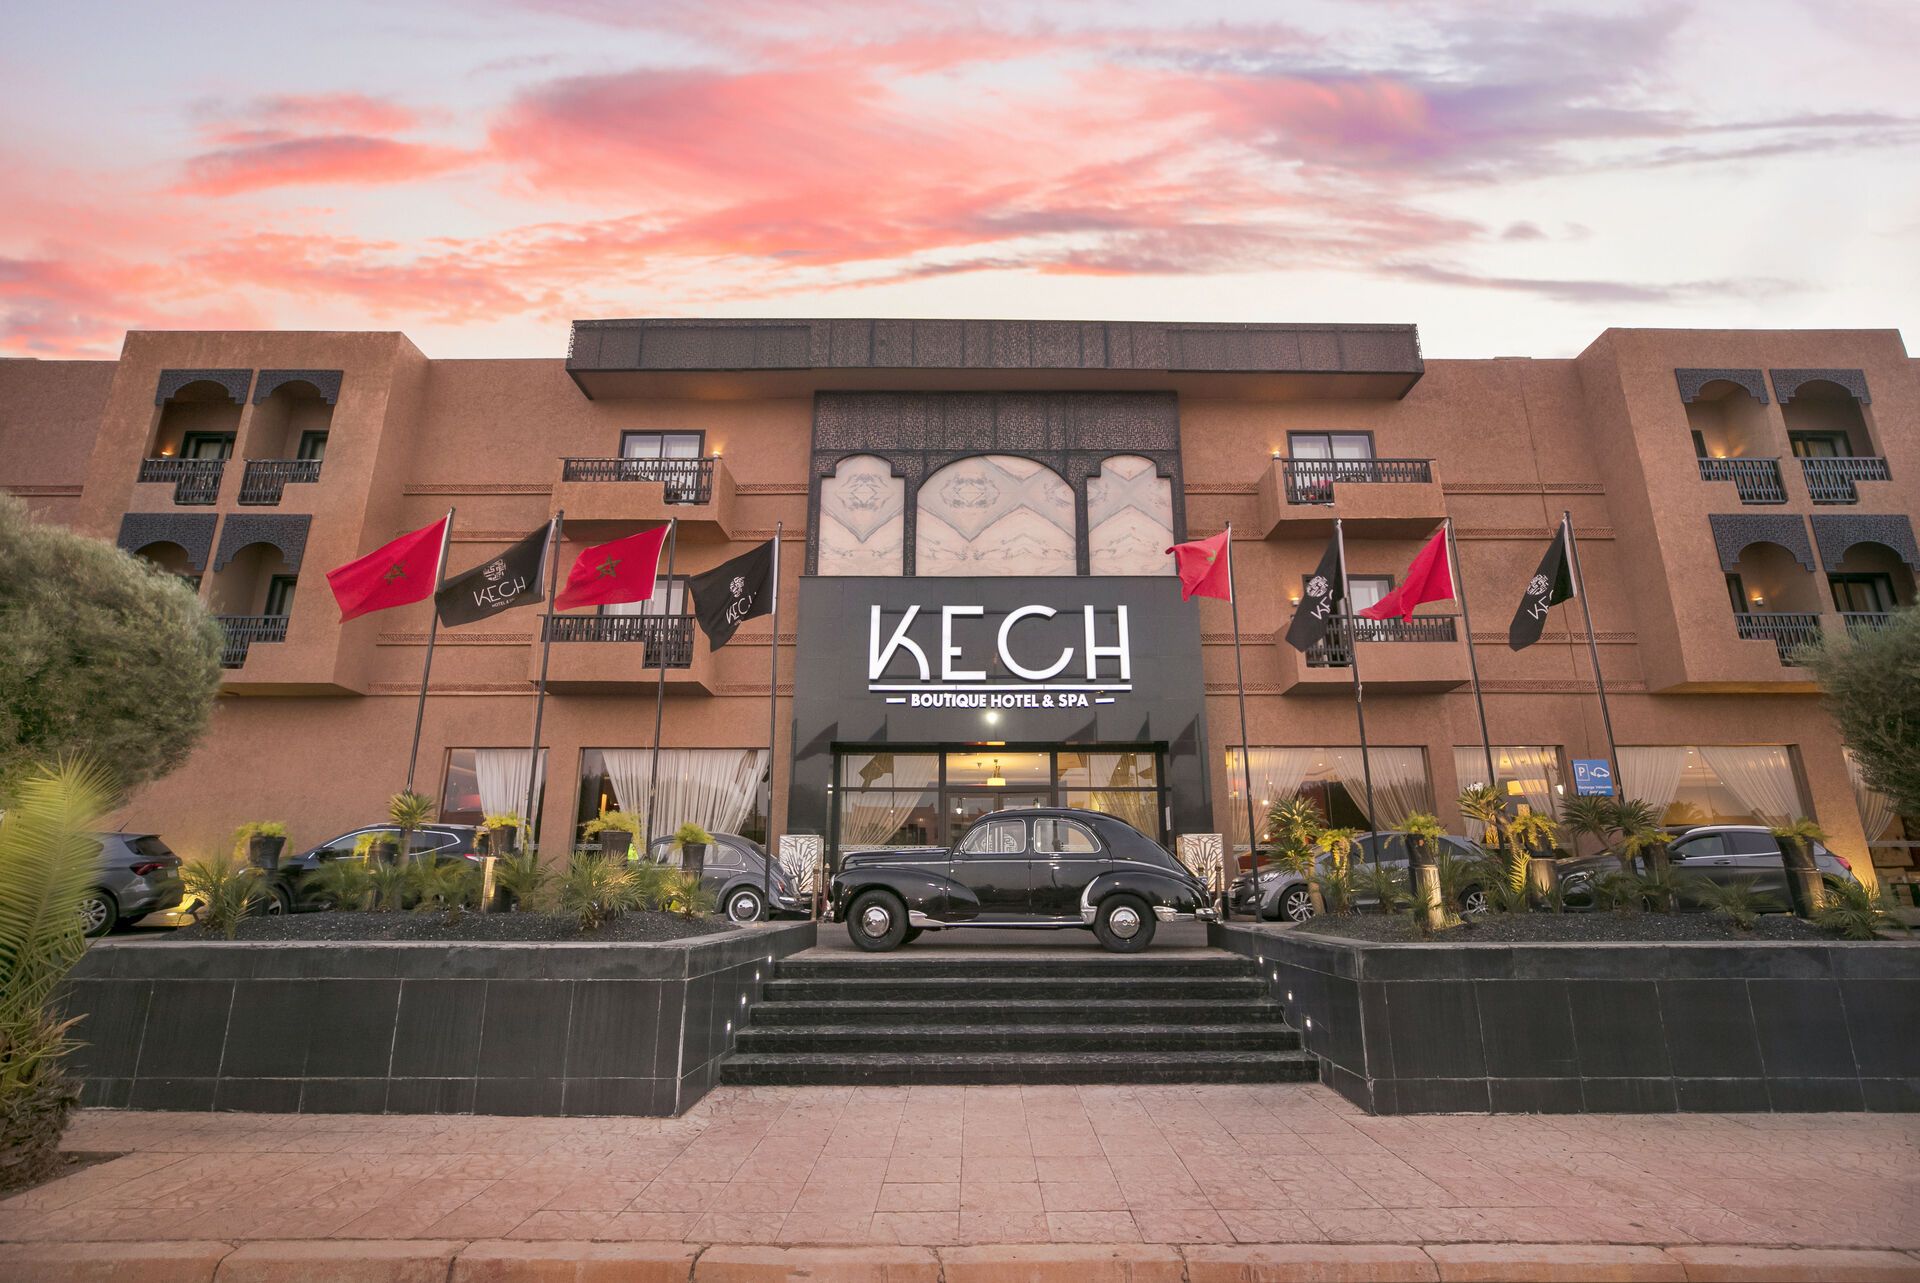 Le Kech Boutique Hôtel and Spa - 4*